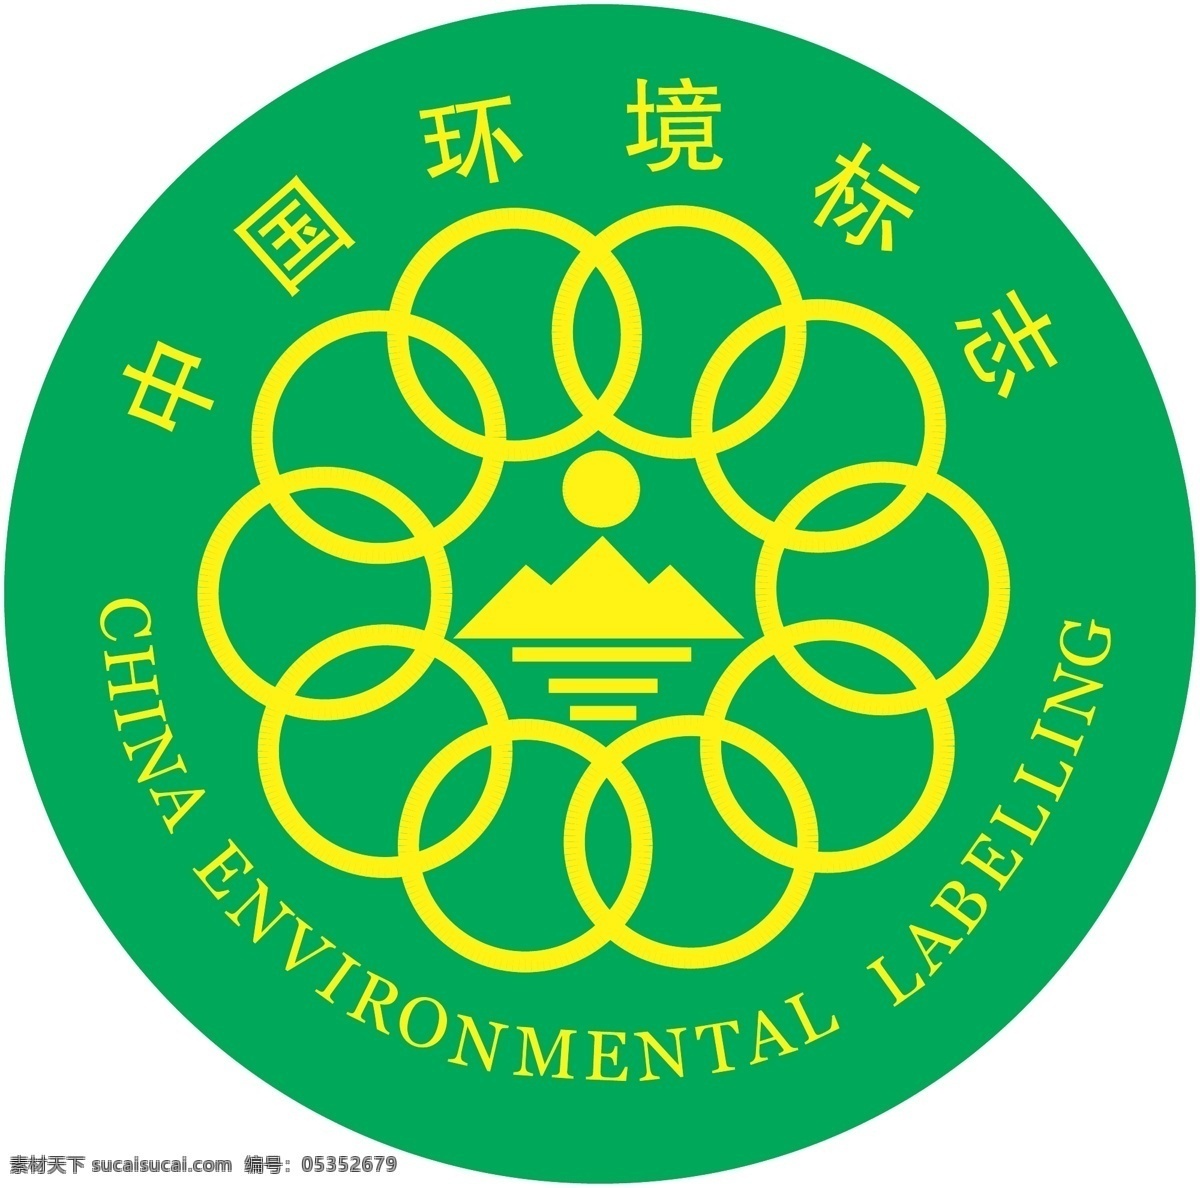 中国环境标志 中国环境 环境标志 logo 环境logo 标志logo 标志图标 公共标识标志